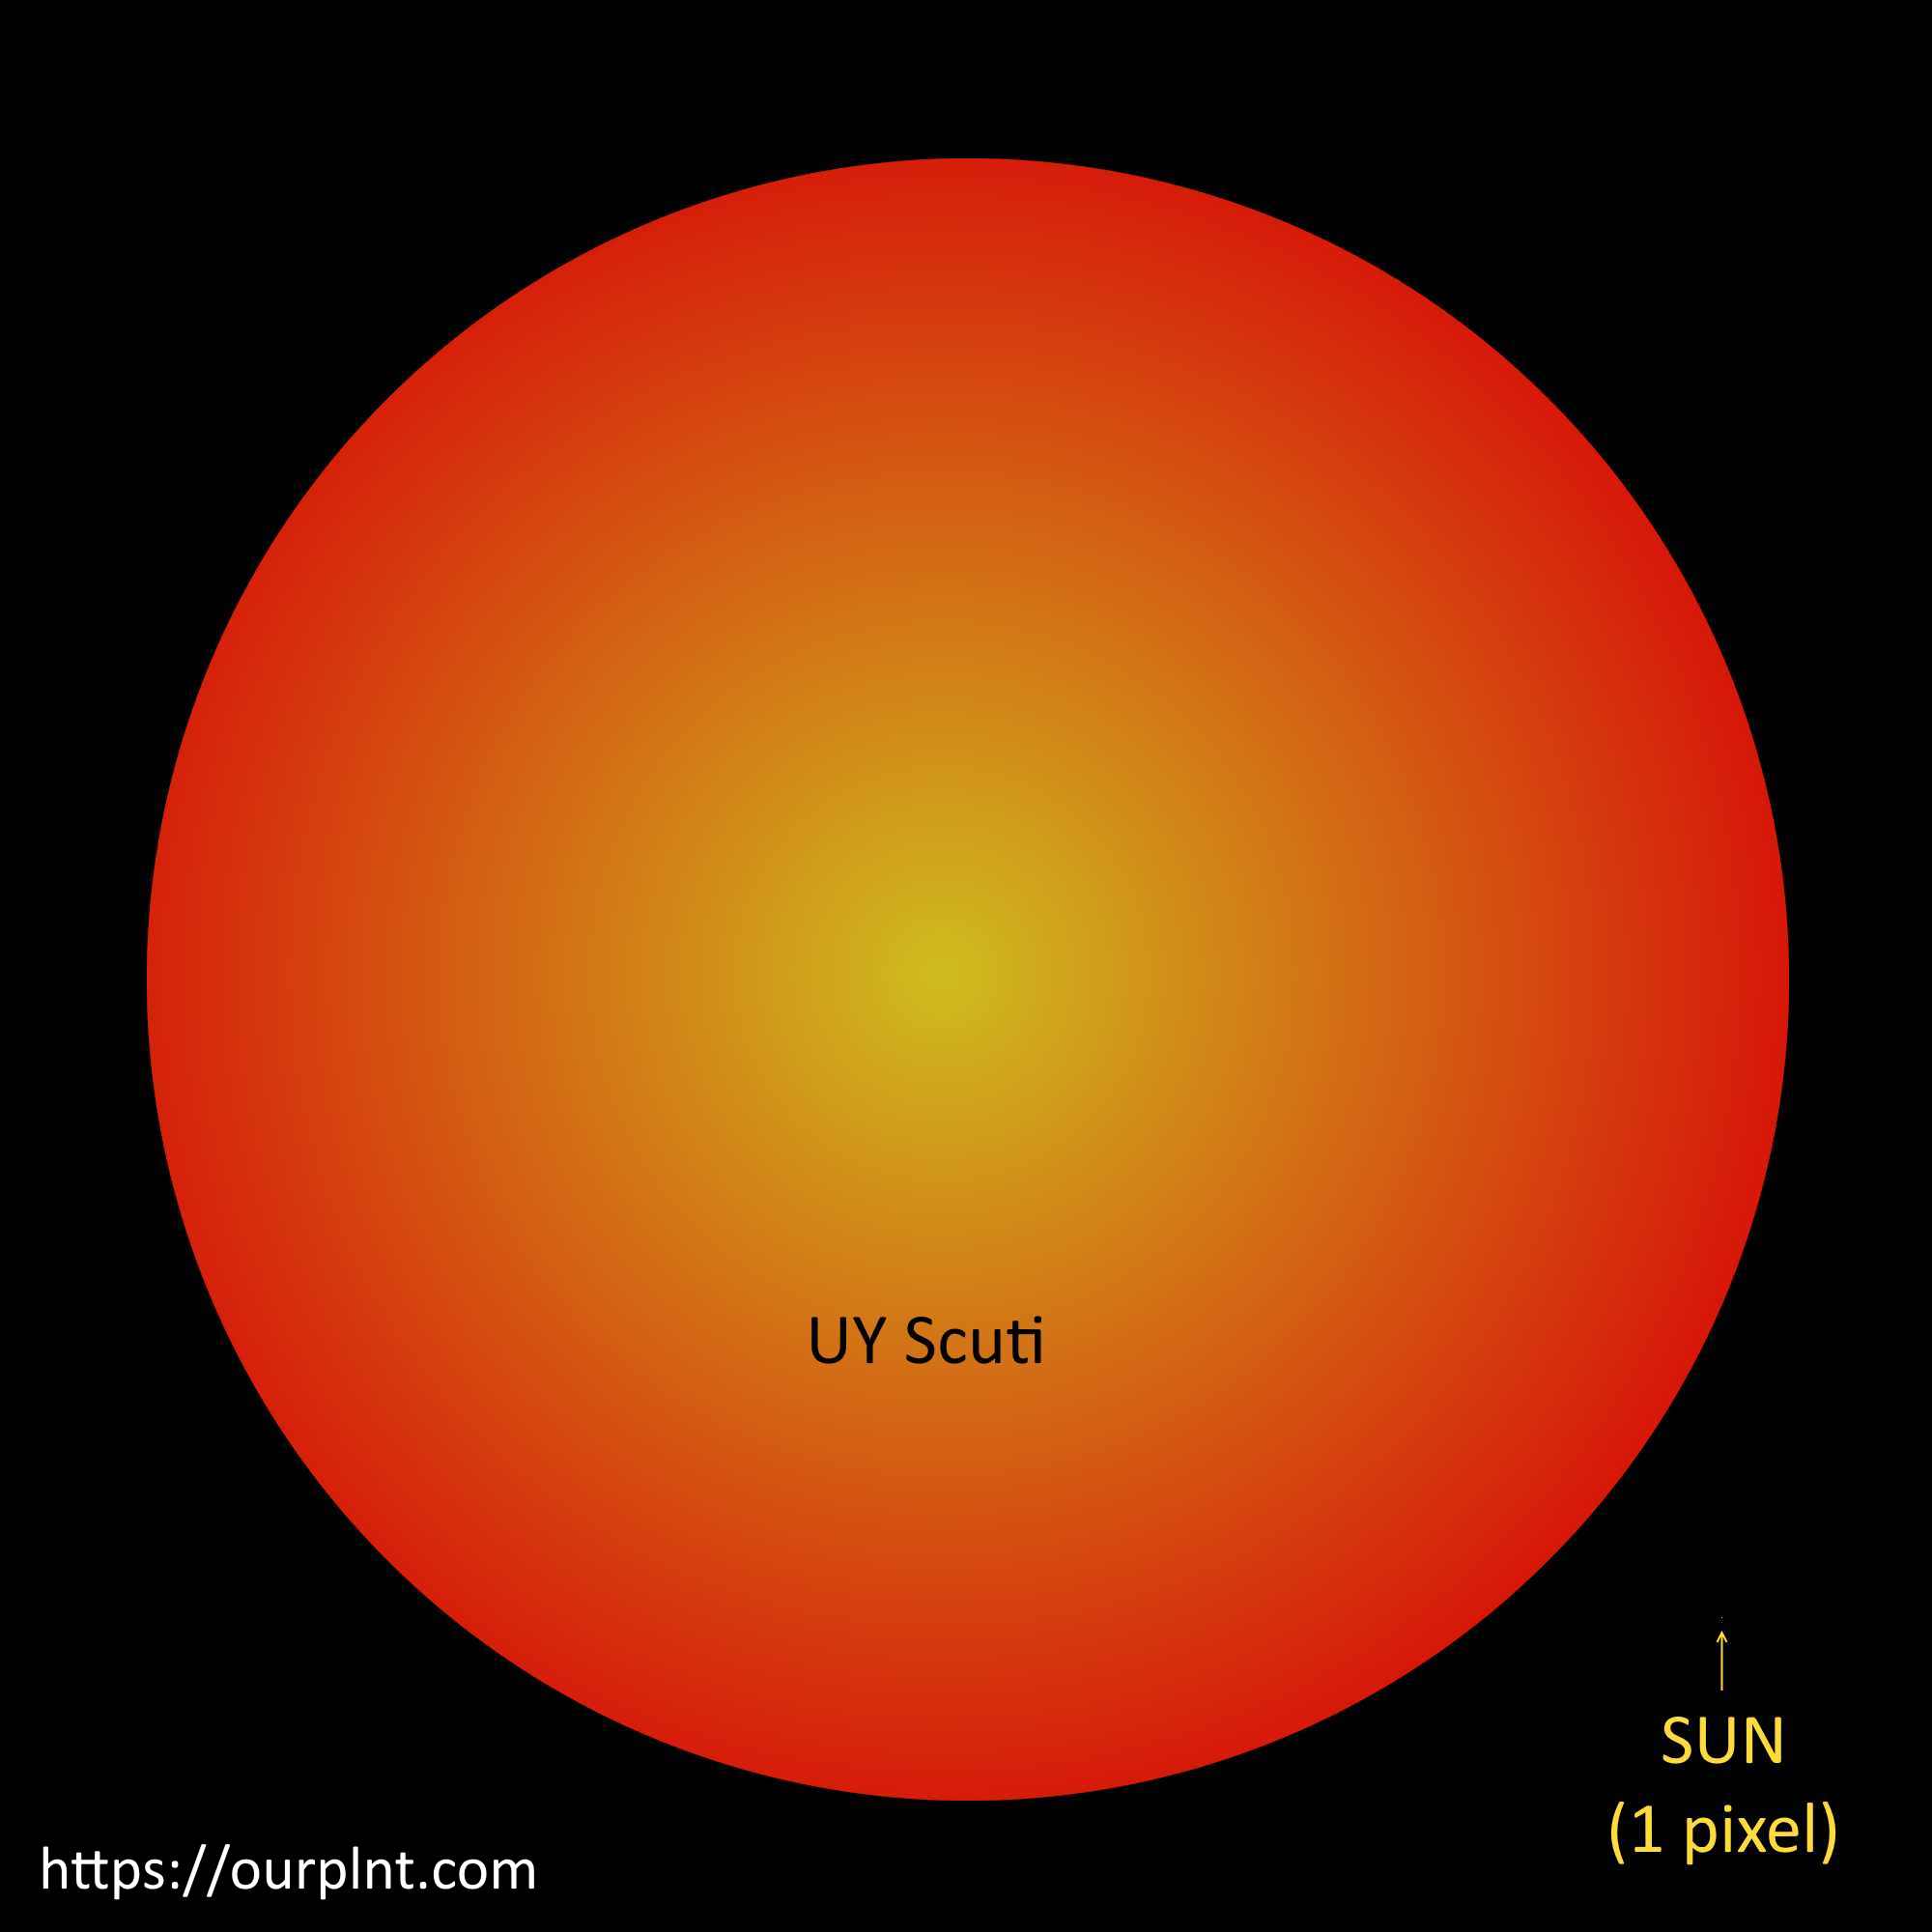 Biggest star in the Universe: UY Scuti vs Sun size comparison